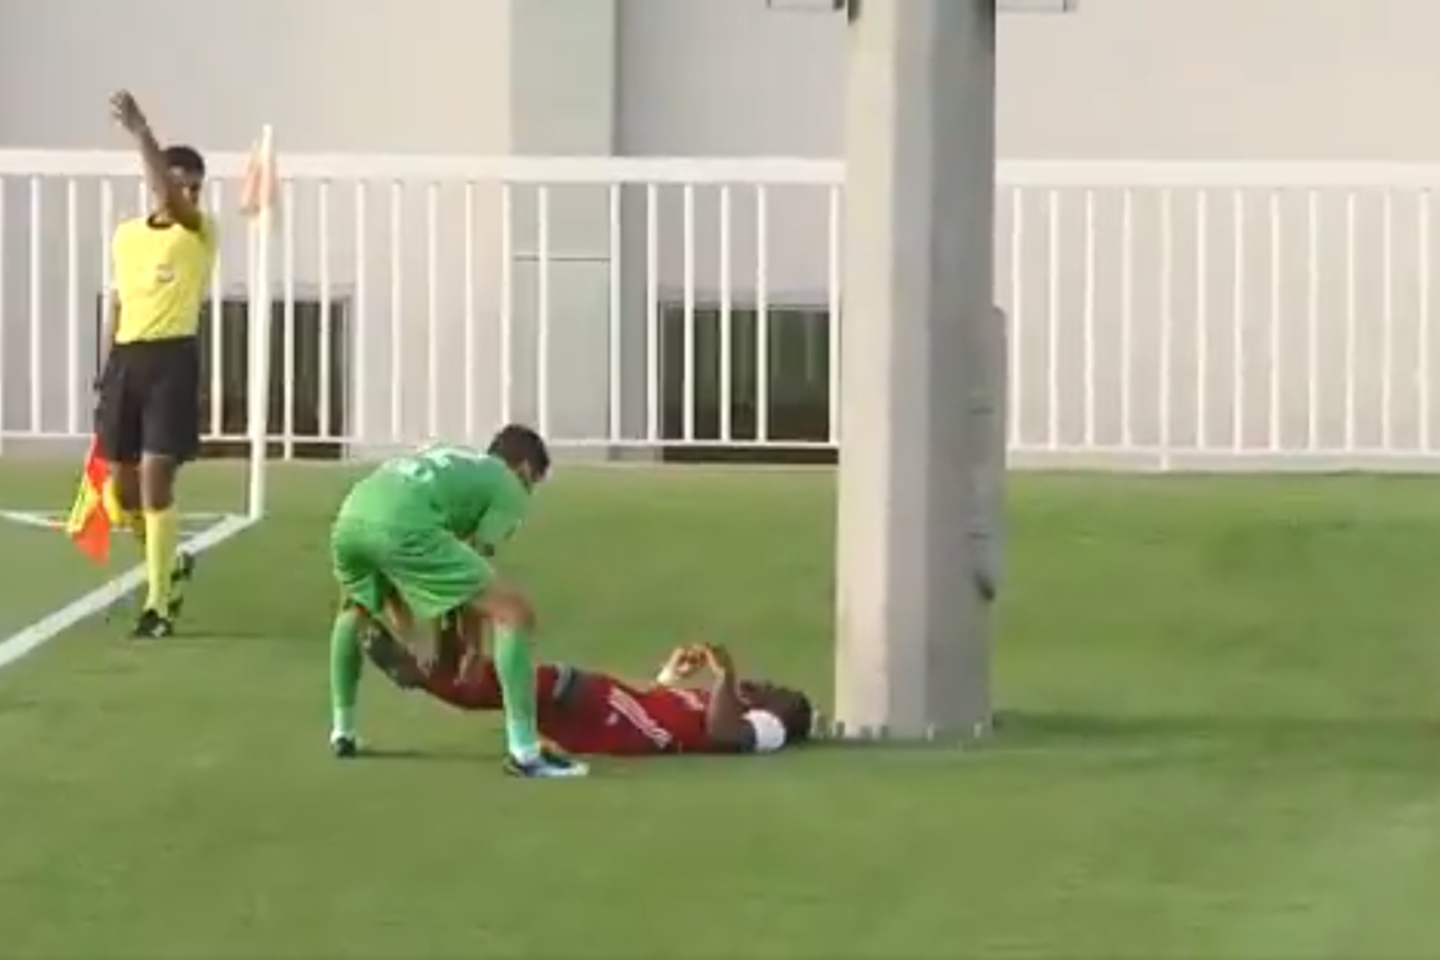  Futbolininkas rungtynių metu skaudžiai trenkėsi į stulpą.<br> Twitter.com nuotr.